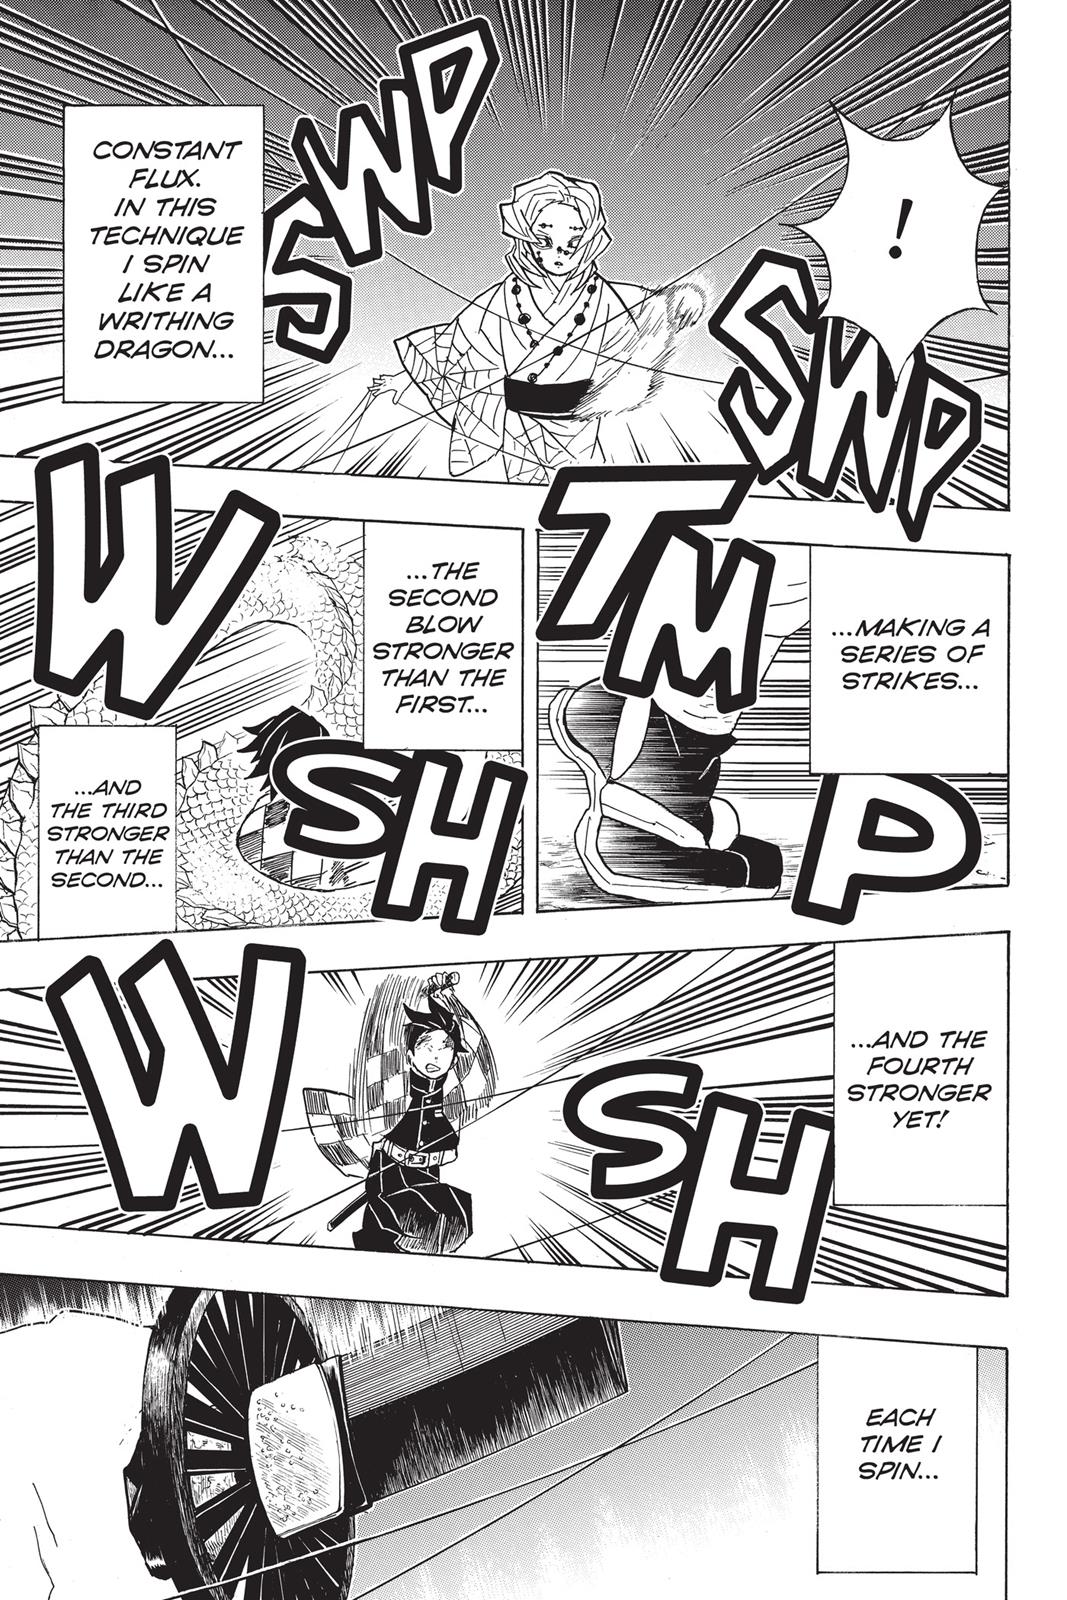 Demon Slayer Manga Manga Chapter - 39 - image 6